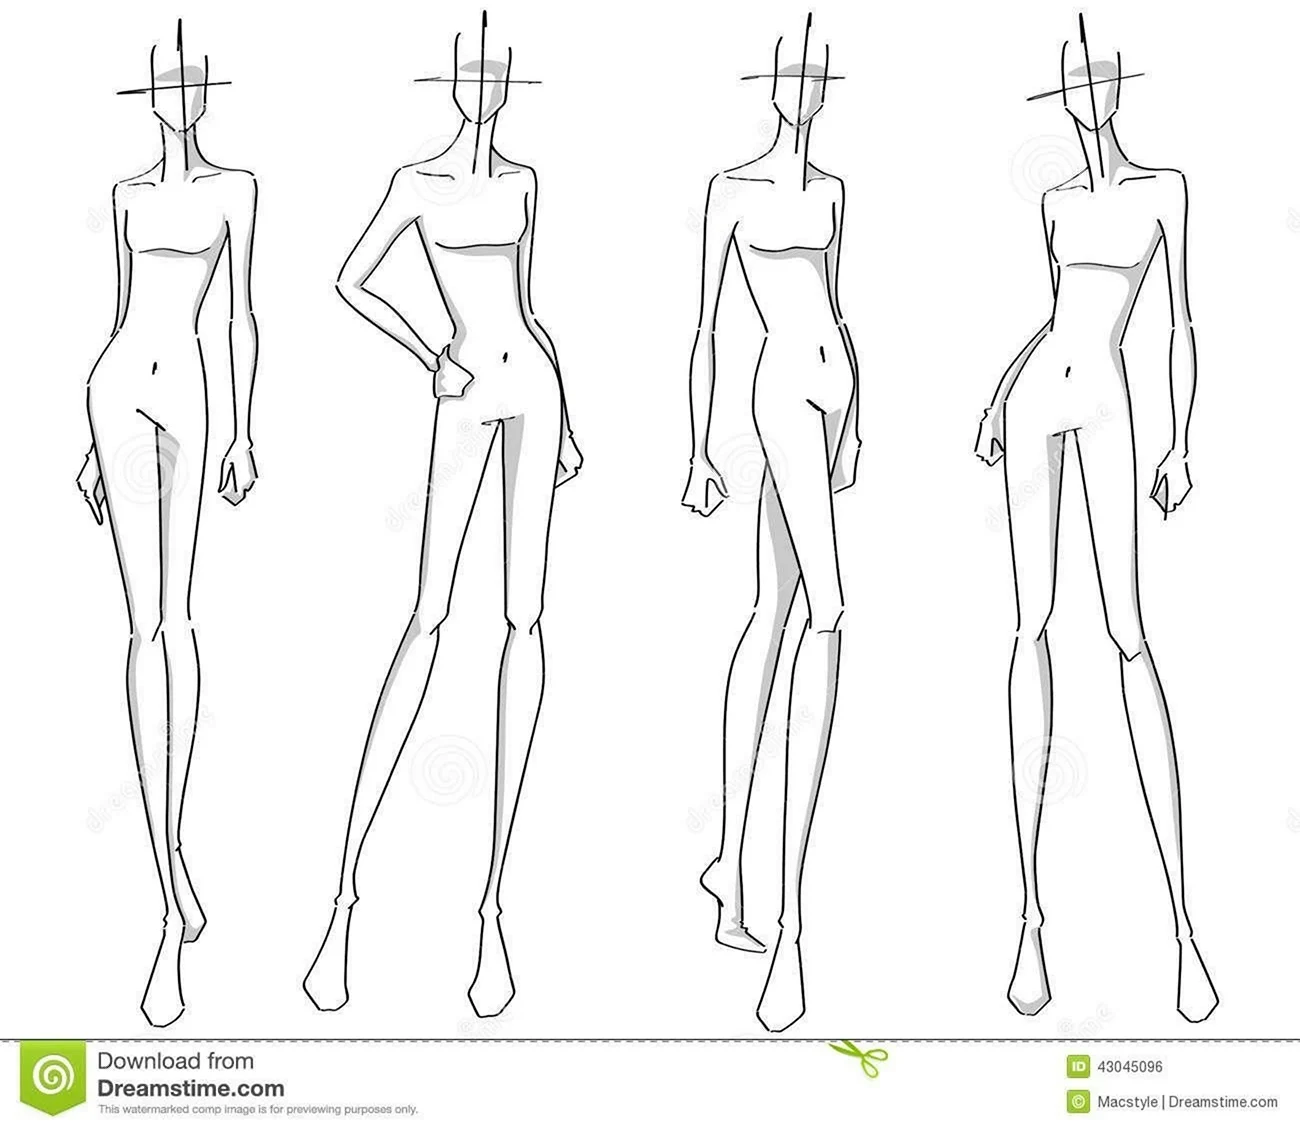 Эскиз женского тела для модельера. Для срисовки